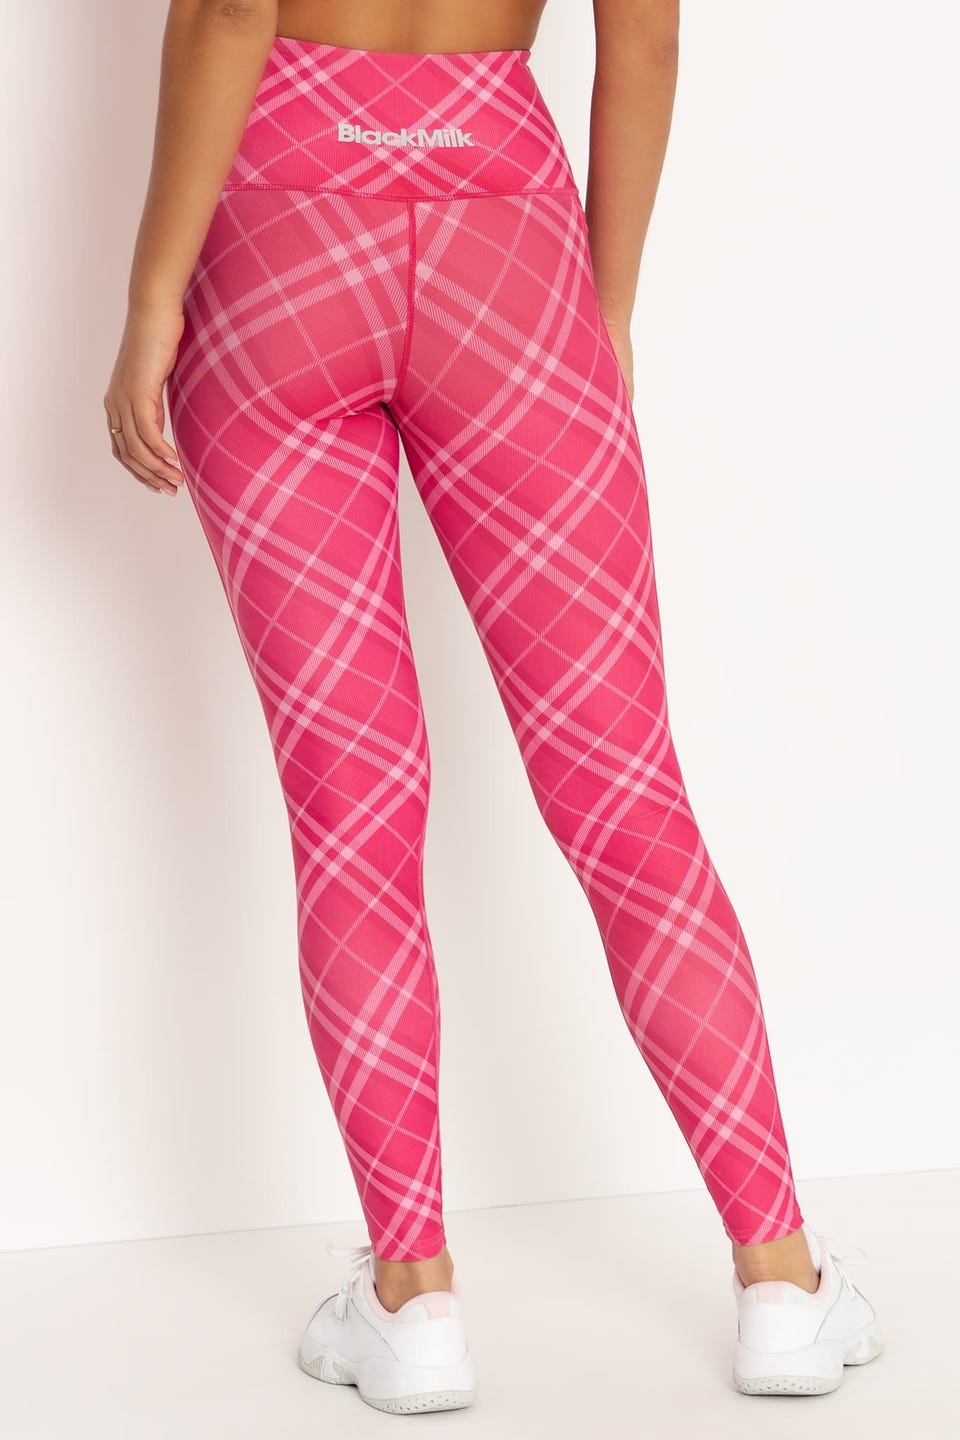 Plaid Pink On Pink HW Ninja Pants - Limited